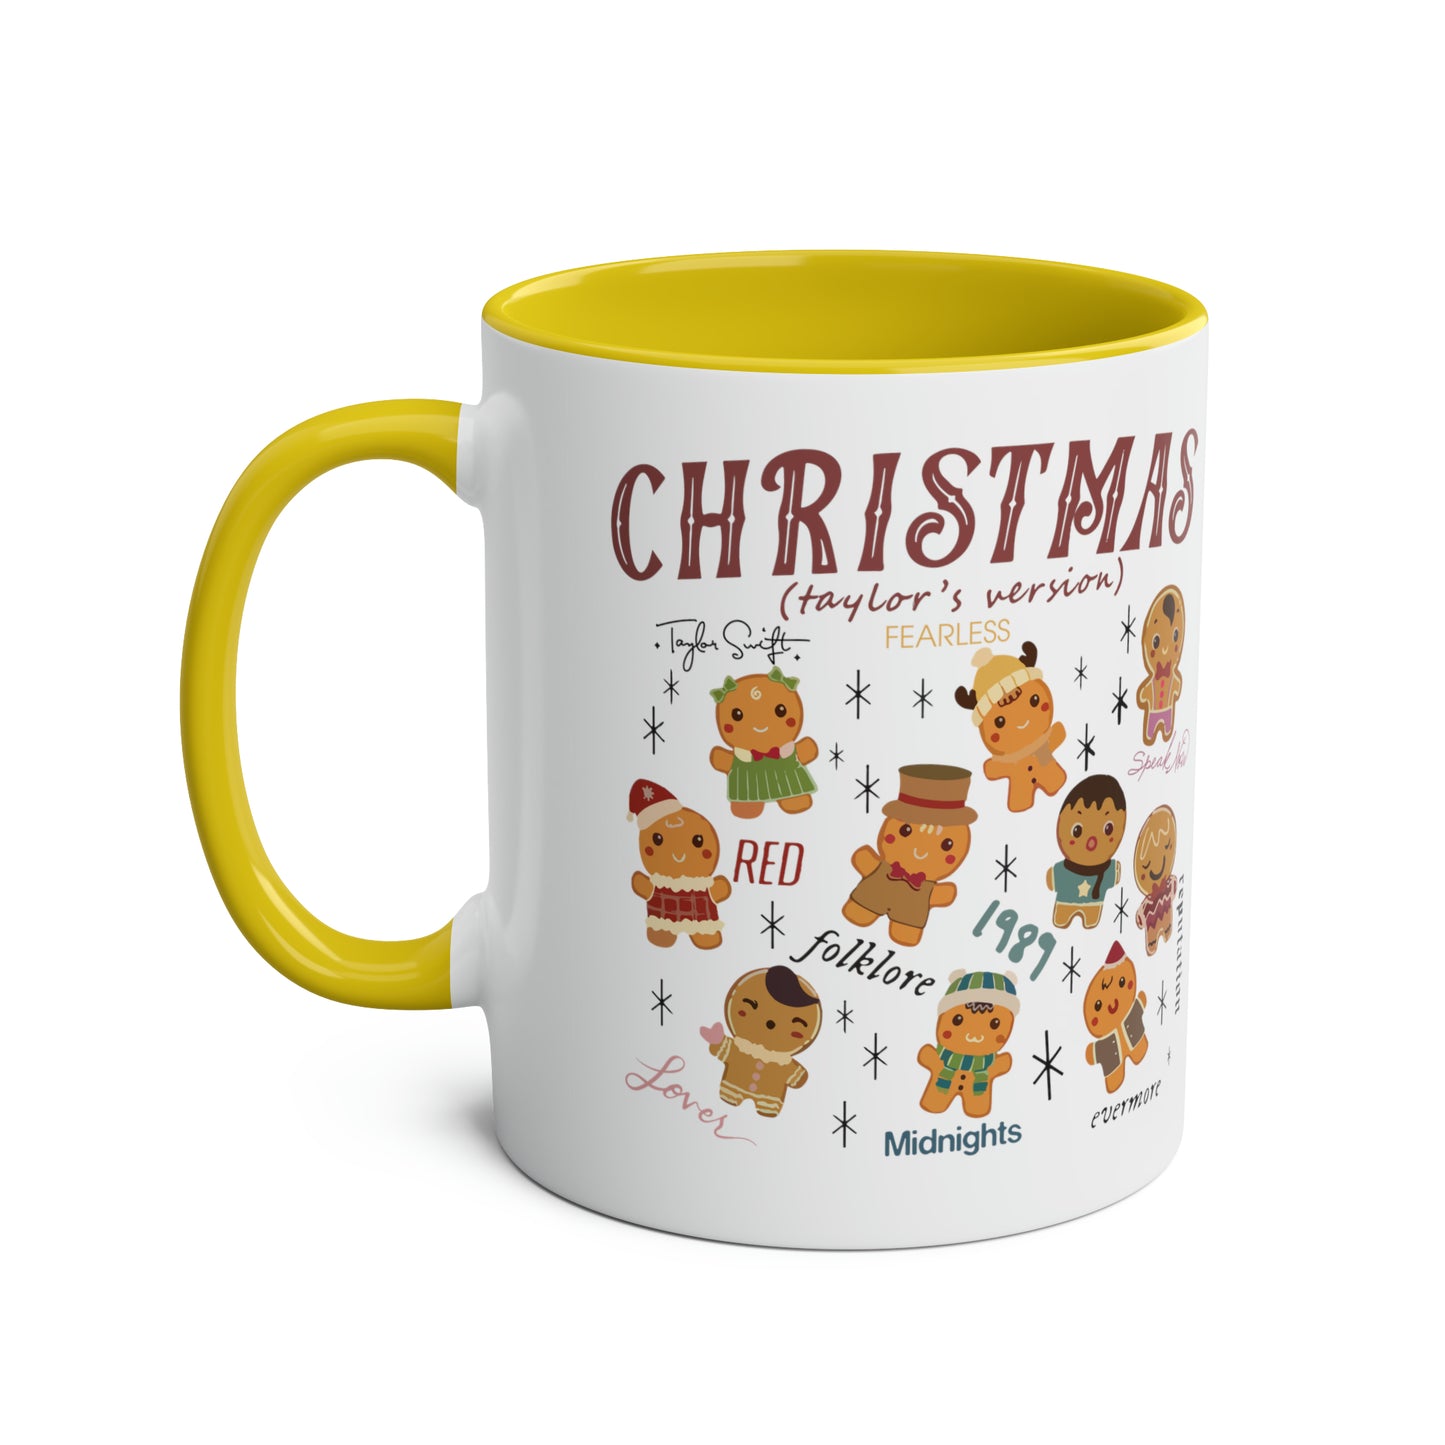 CHRISTMAS Taylor's Version / Taylor Swift's Christmas Mug